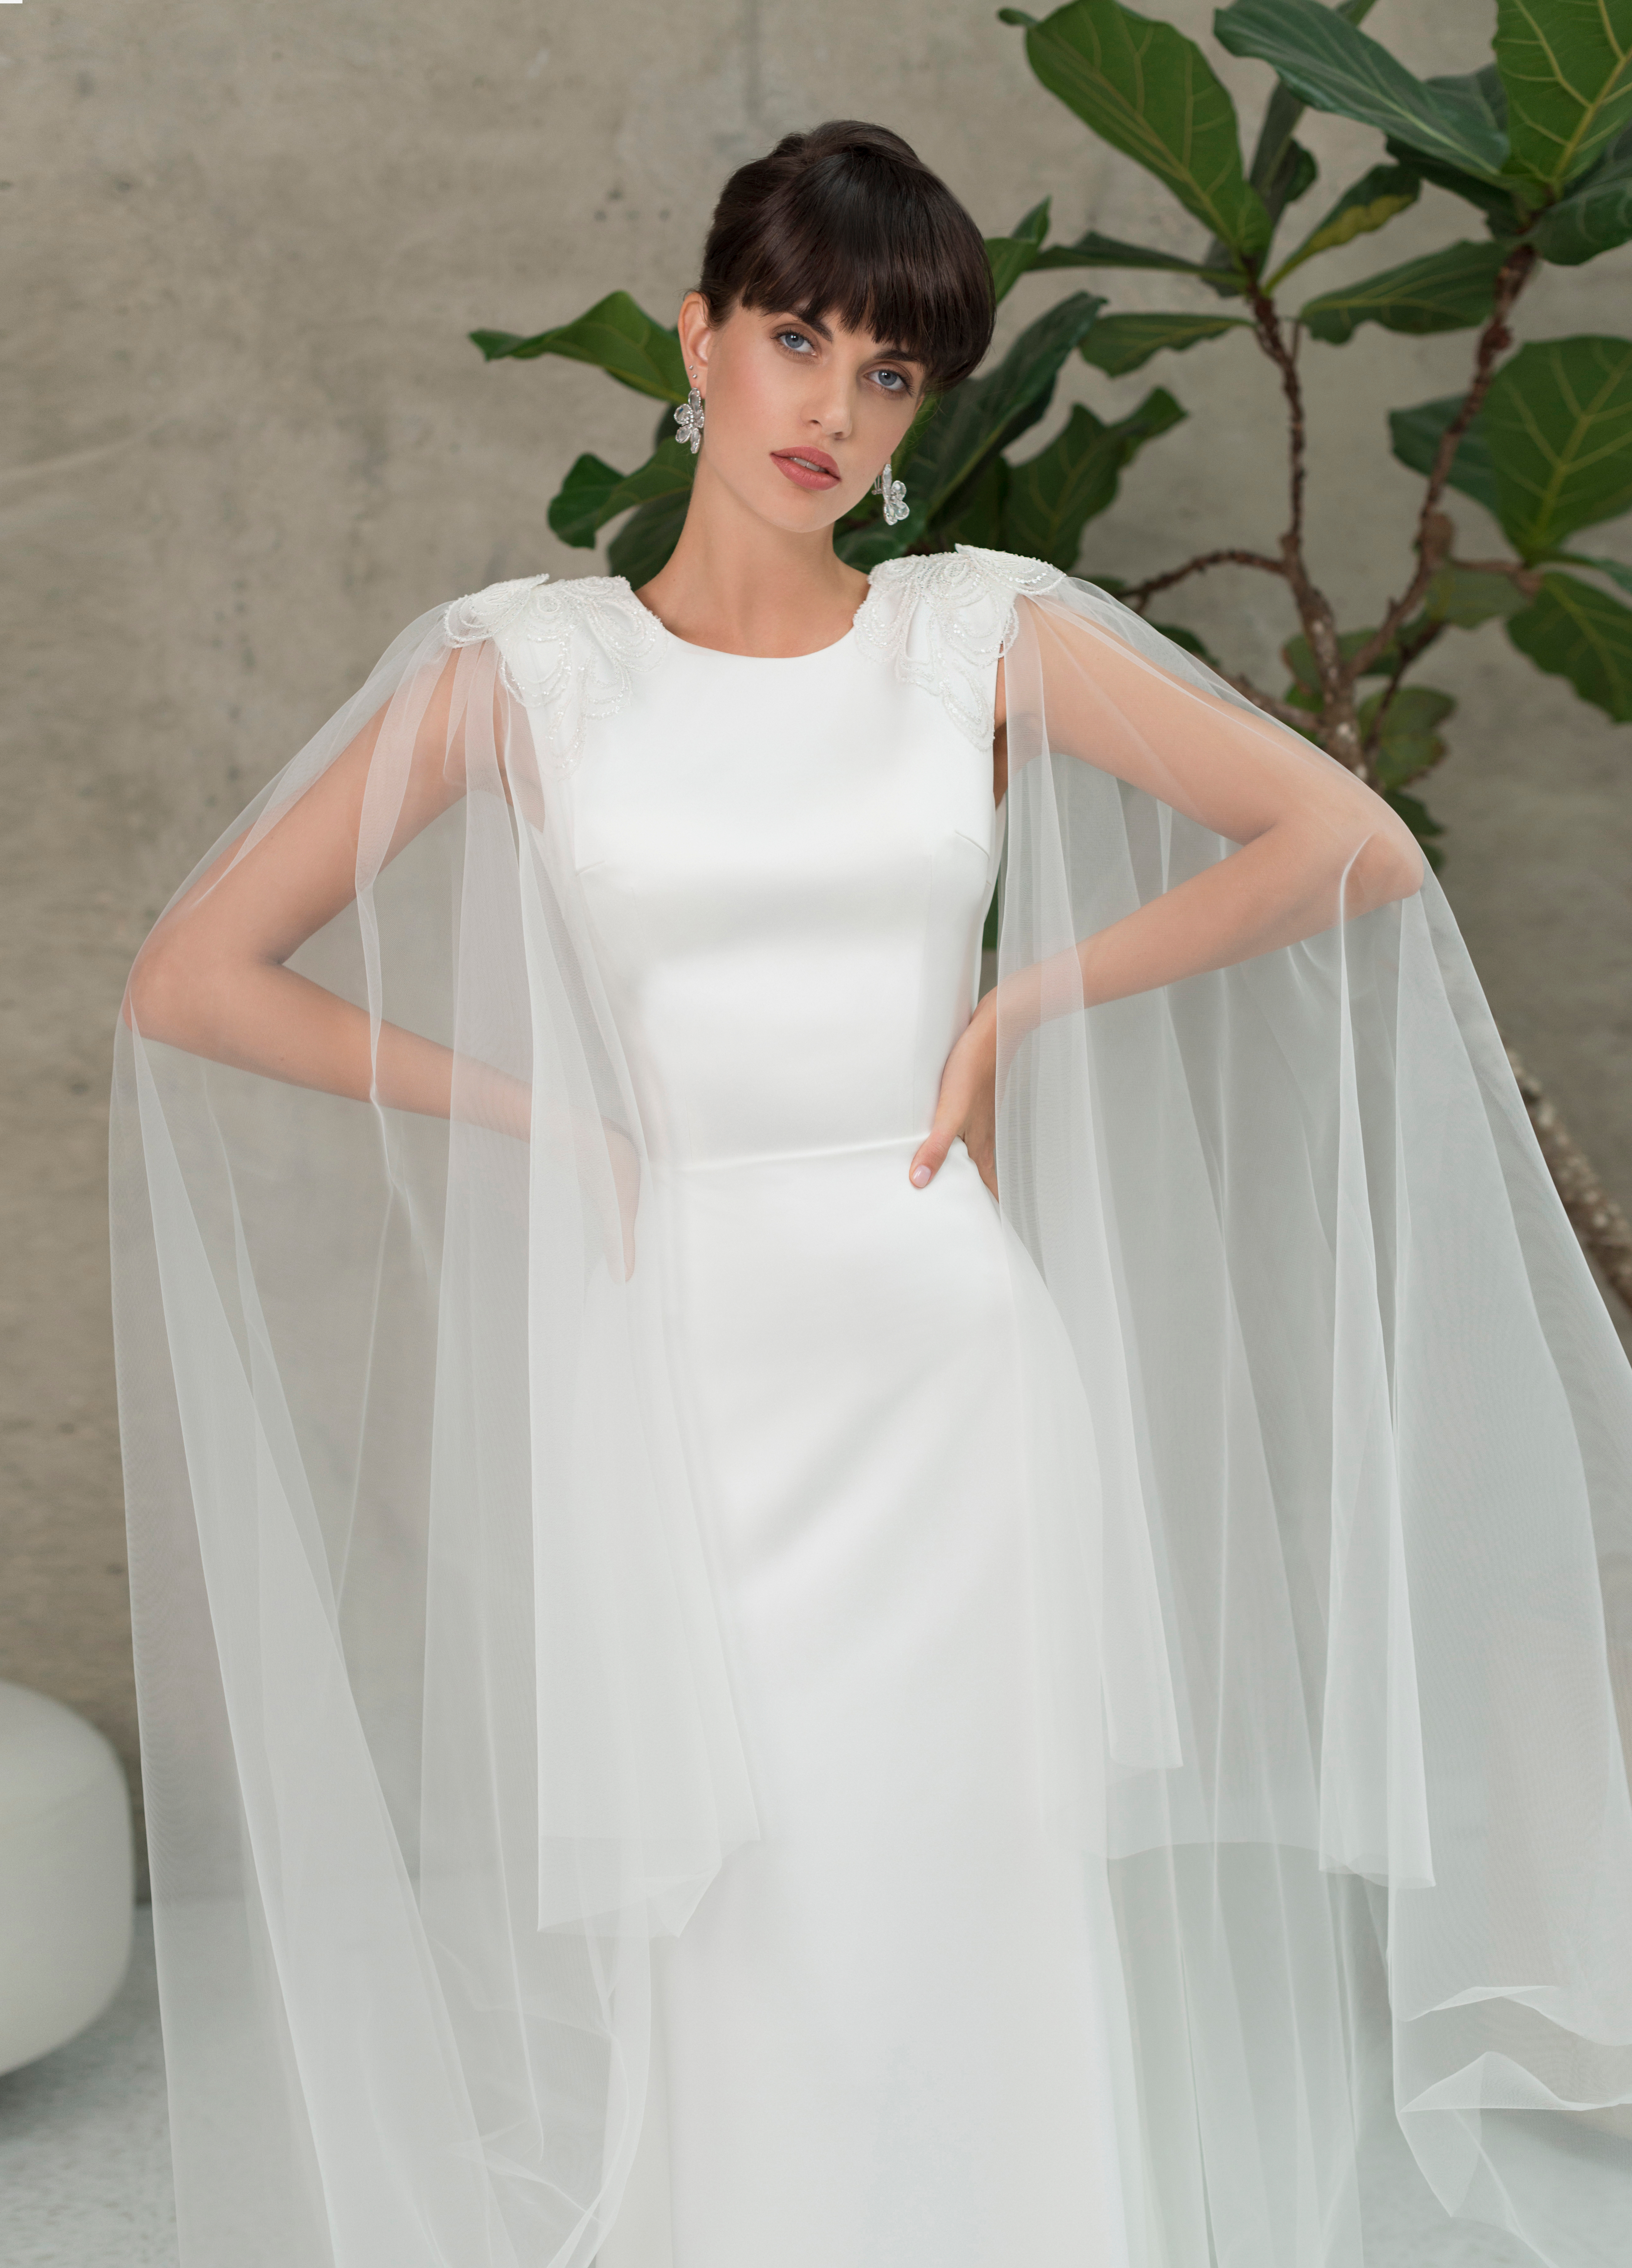 Купить свадебное платье «Мэкфил» Мэрри Марк из коллекции 2022 года в Мэри Трюфель